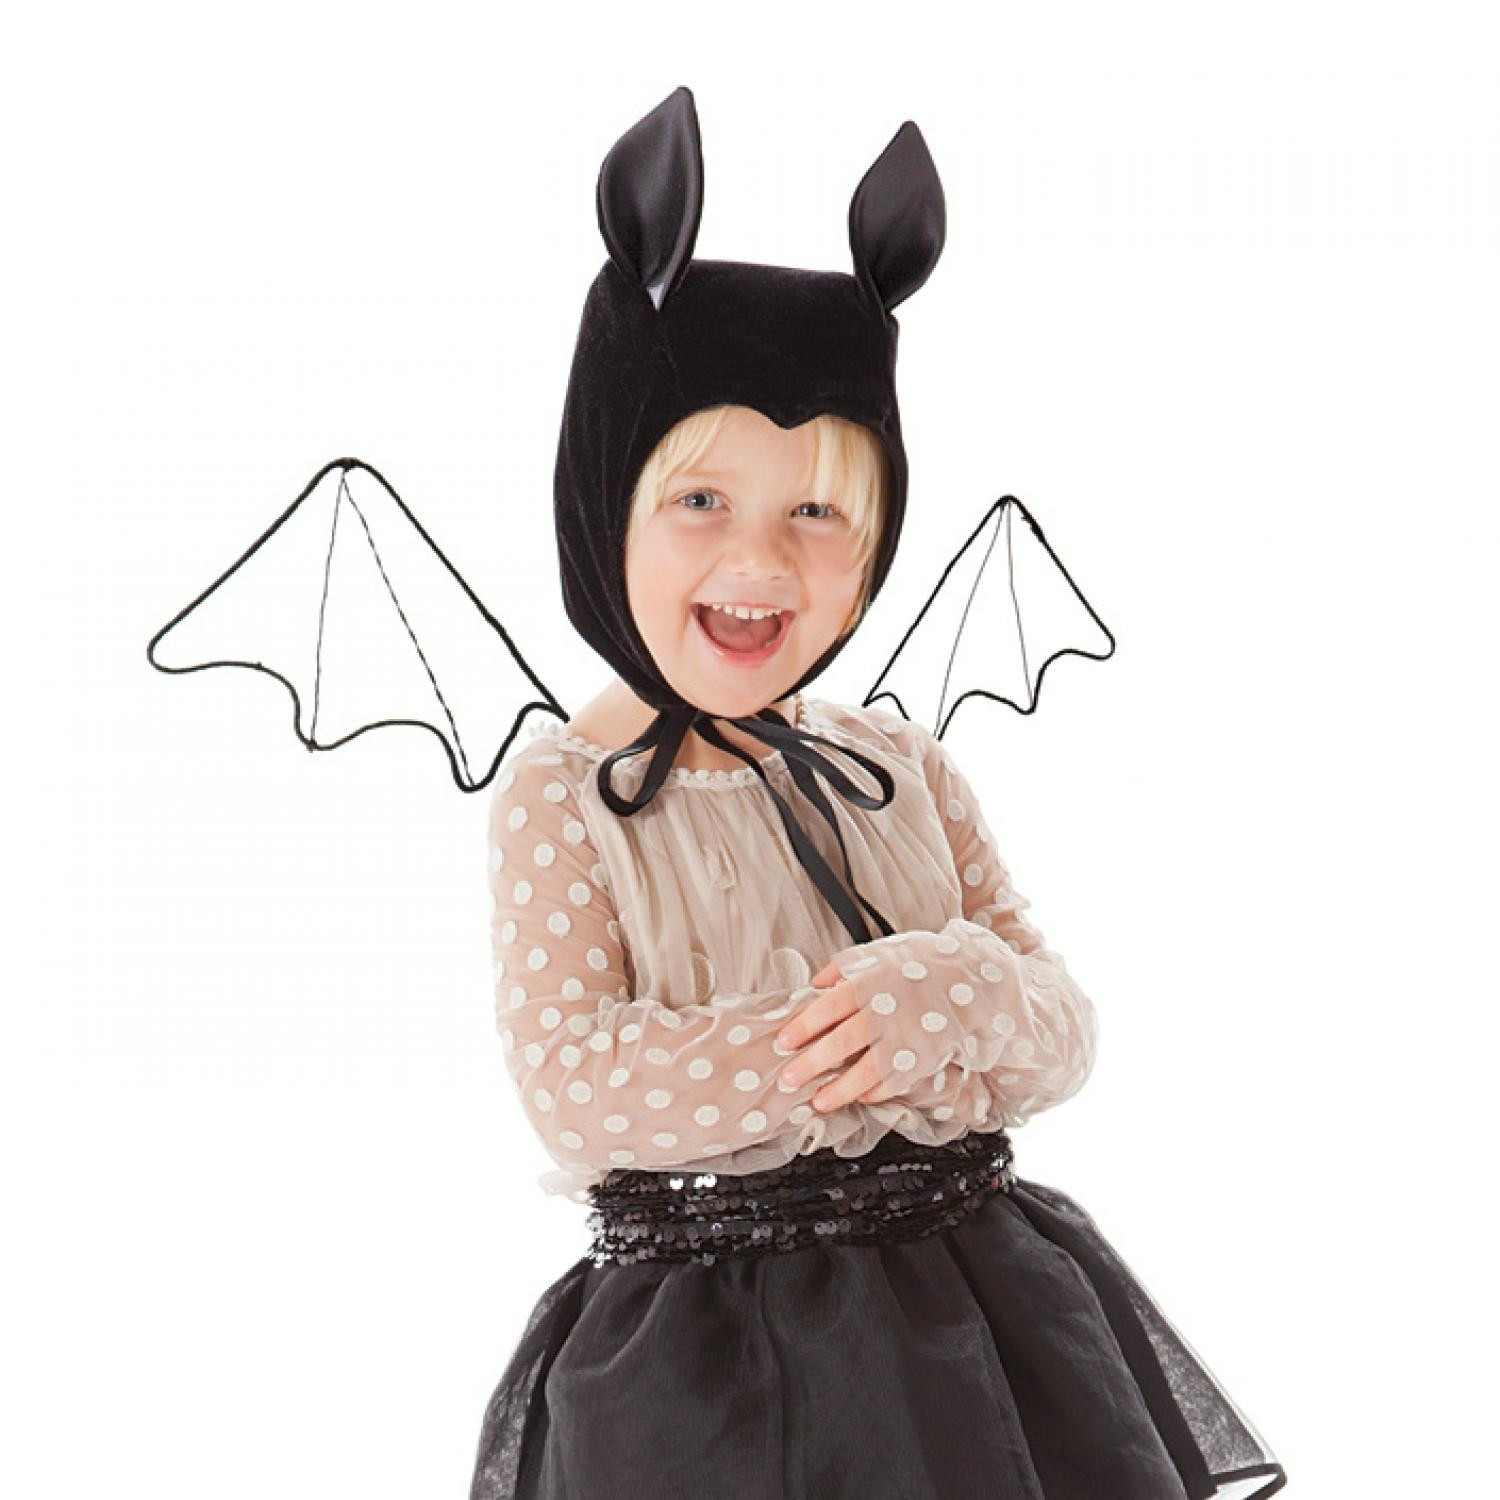 DIY Toddler Halloween Costumes
 DIY Kids Halloween Costumes